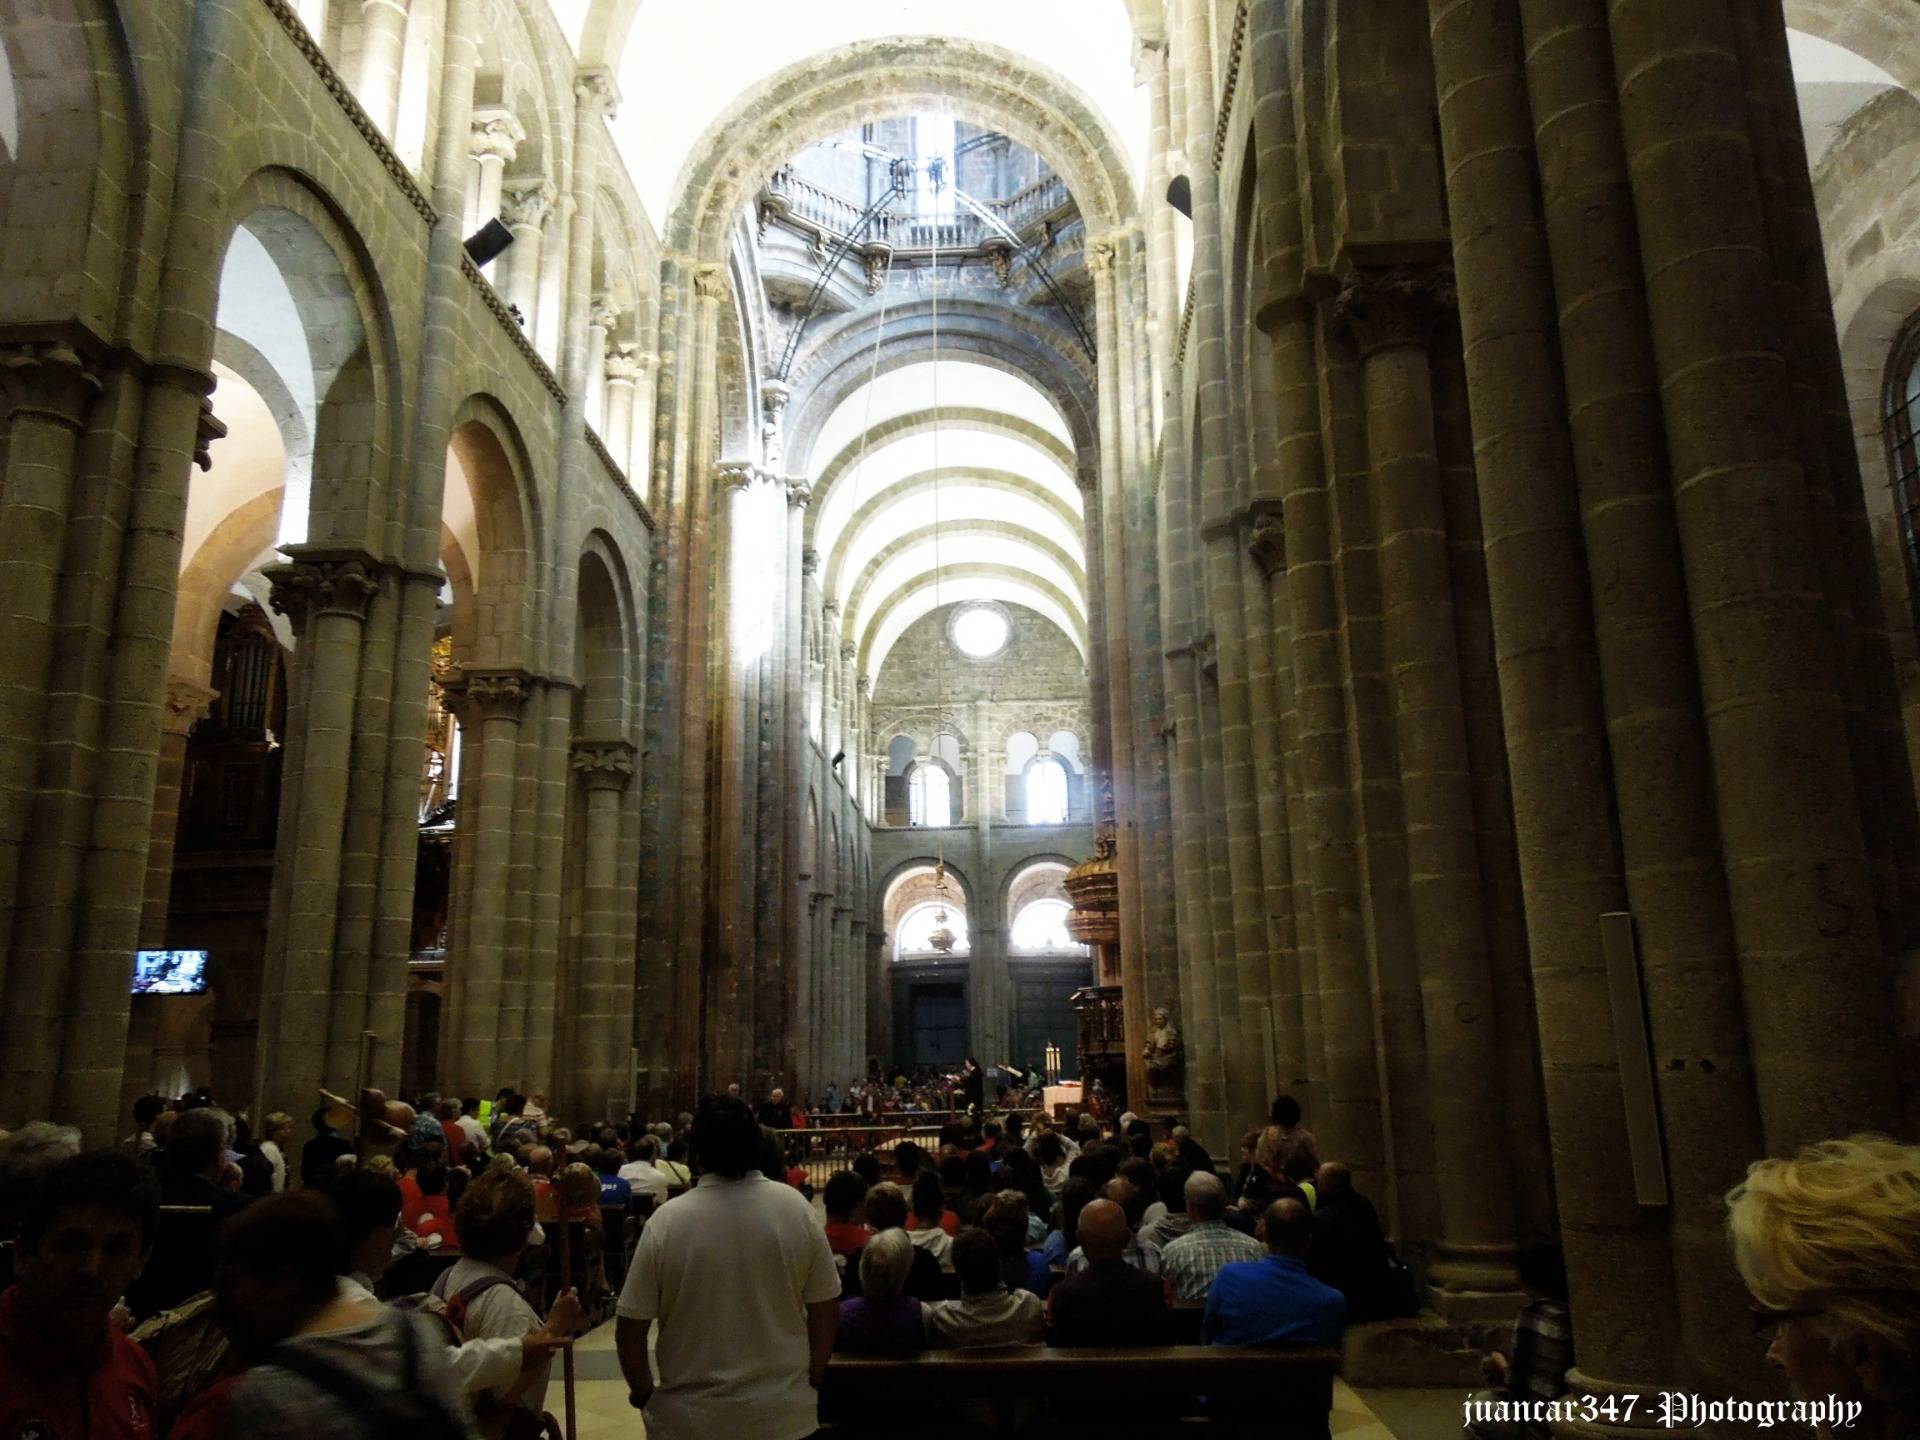 A walk through the cathedral of Santiago de Compostela